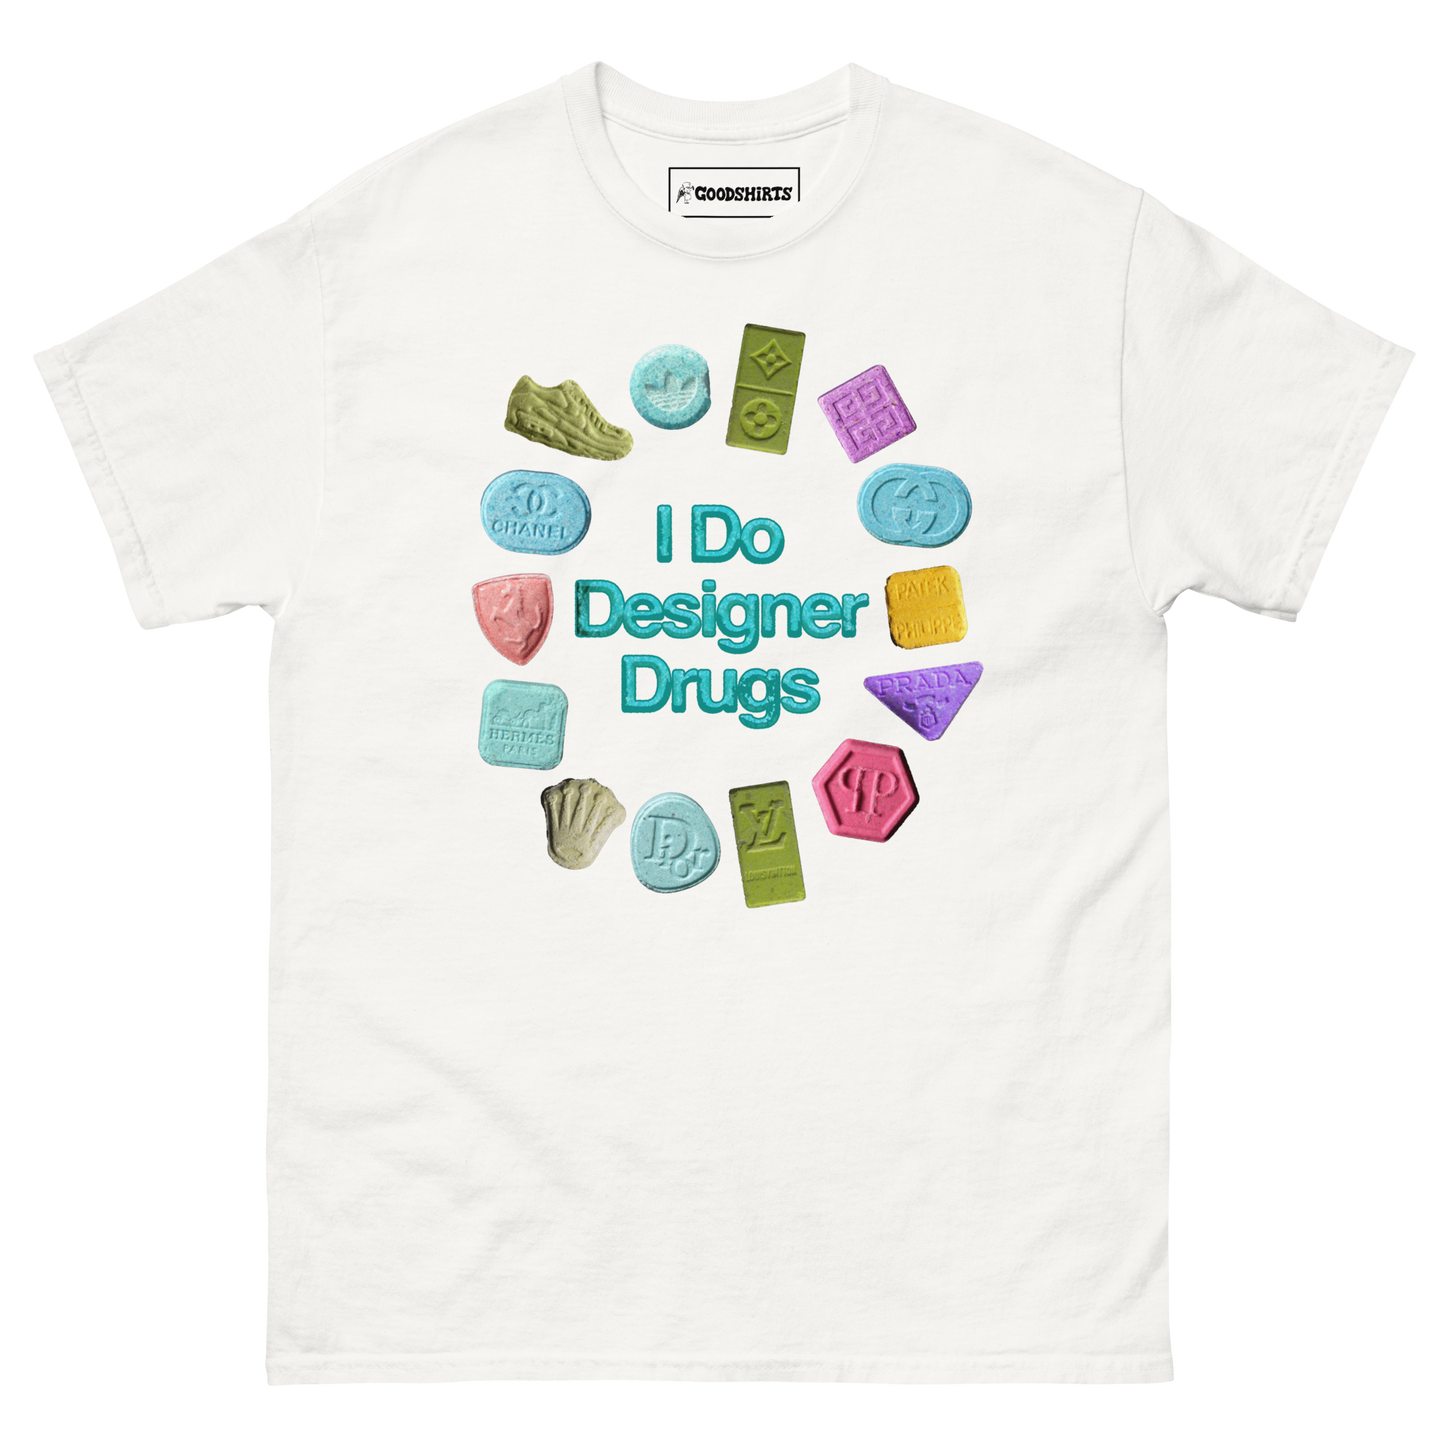 I Do Designer Drugs.